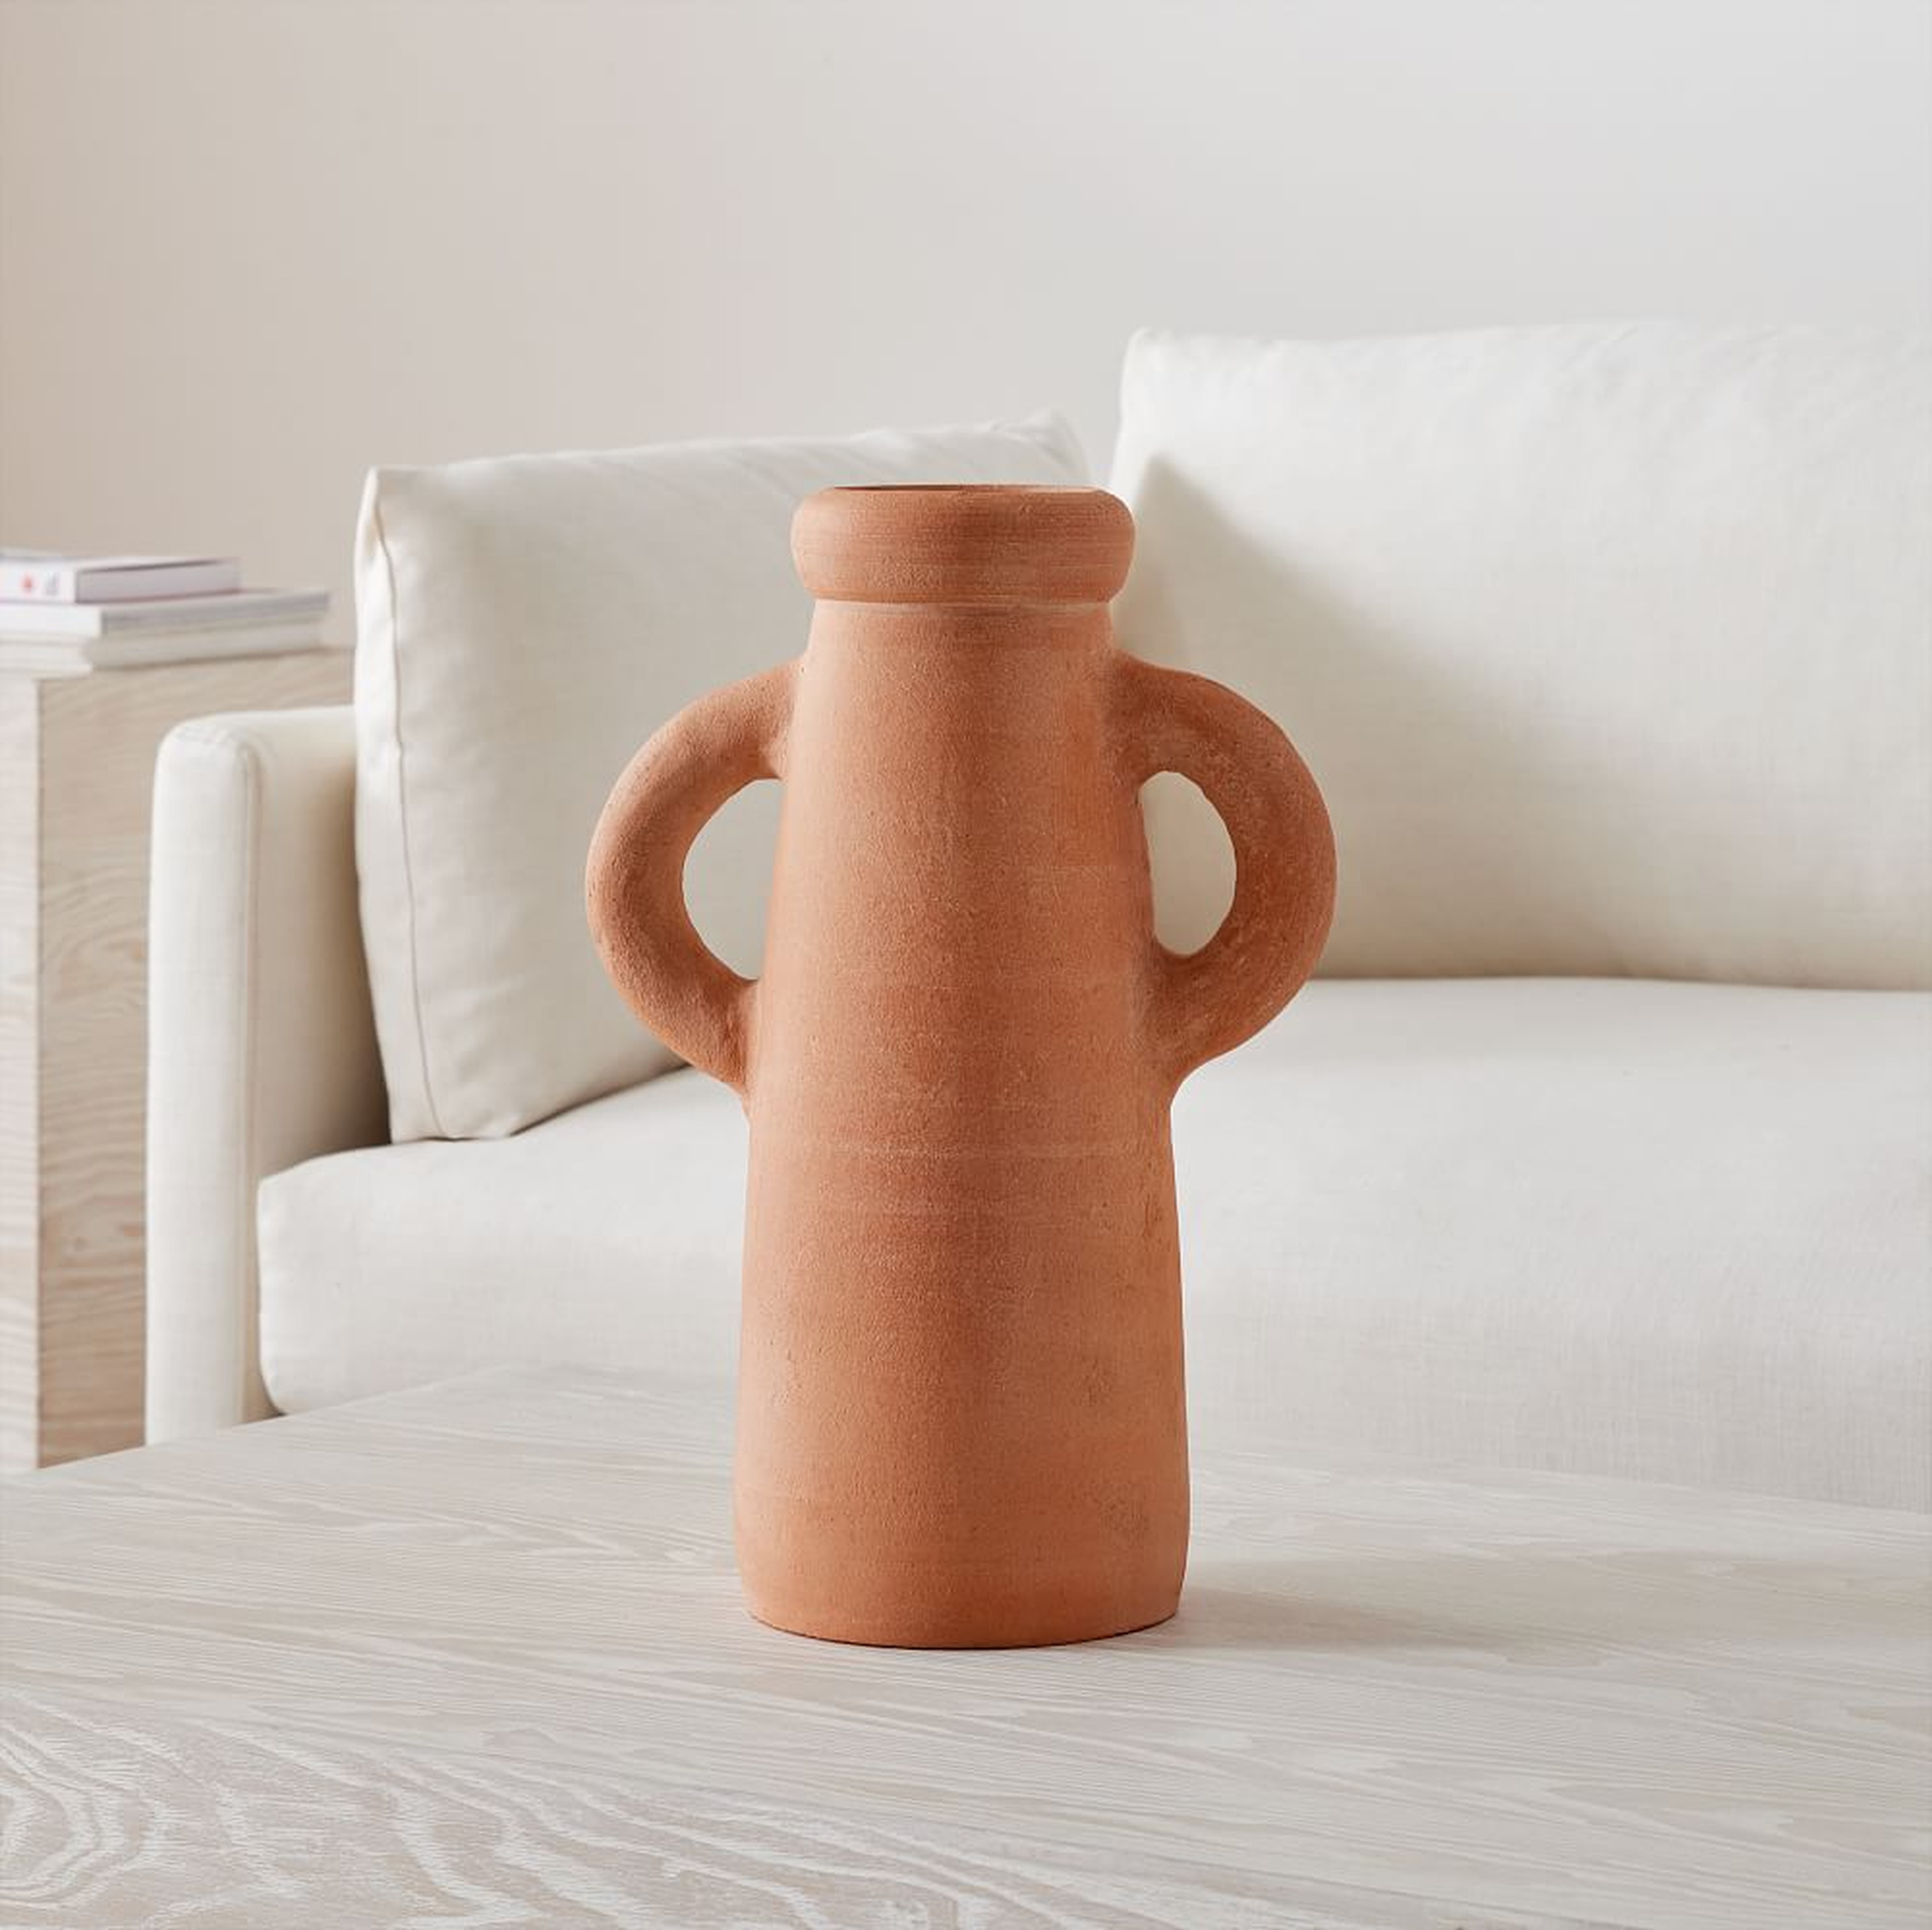 Atuto Terracotta Vases, Vase With Handles, Terracotta, Ceramic, 16.5 Inches - West Elm